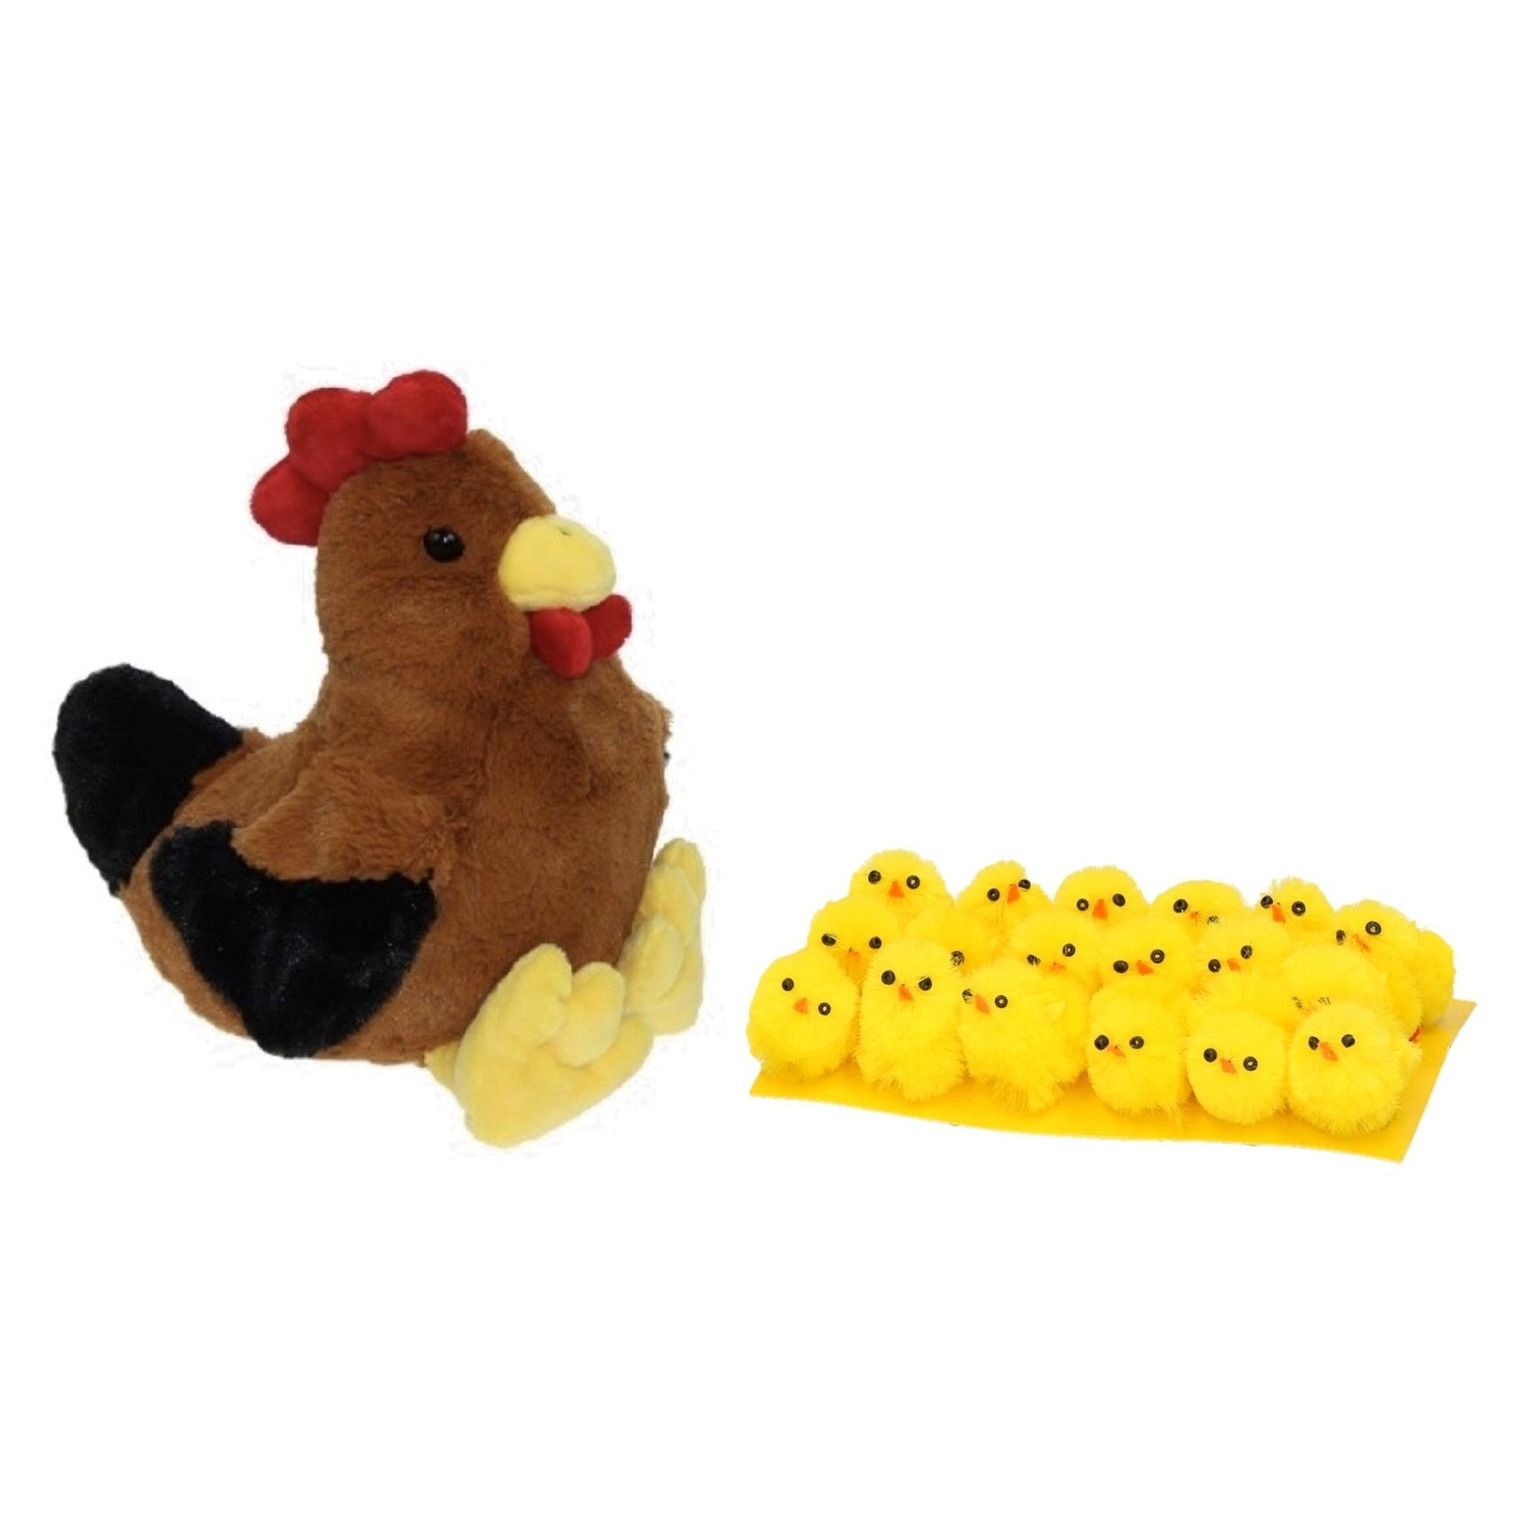 Pluche bruine kippen-hanen knuffel van 25 cm met 18x stuks mini kuikentjes 3 cm